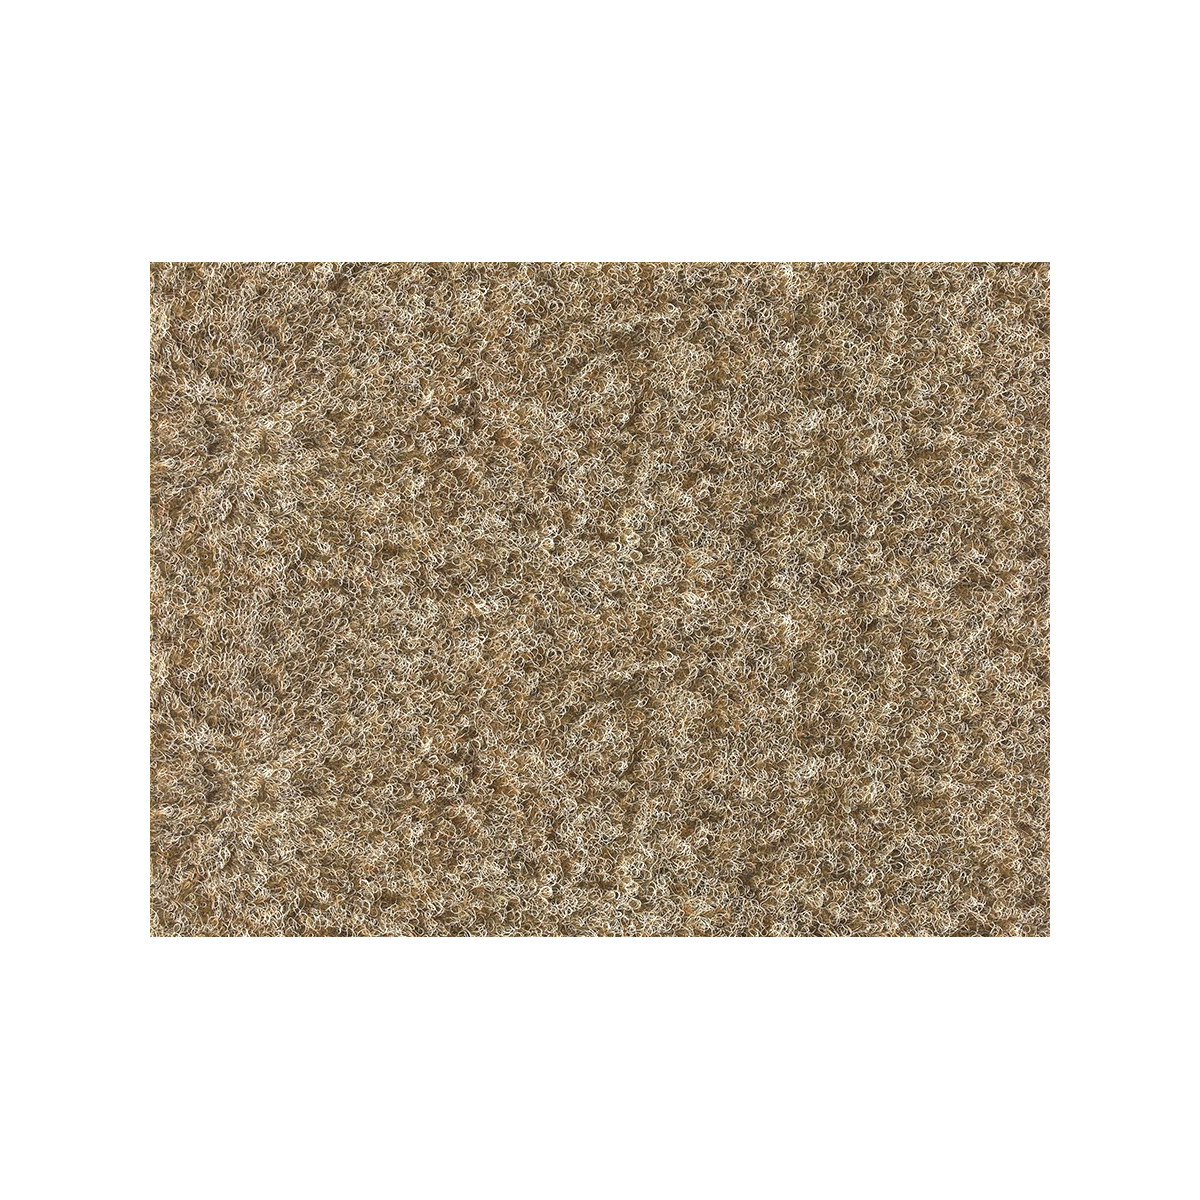 AKCE: 200x190 cm Metrážový koberec Santana 12 béžová s podkladem resine, zátěžový